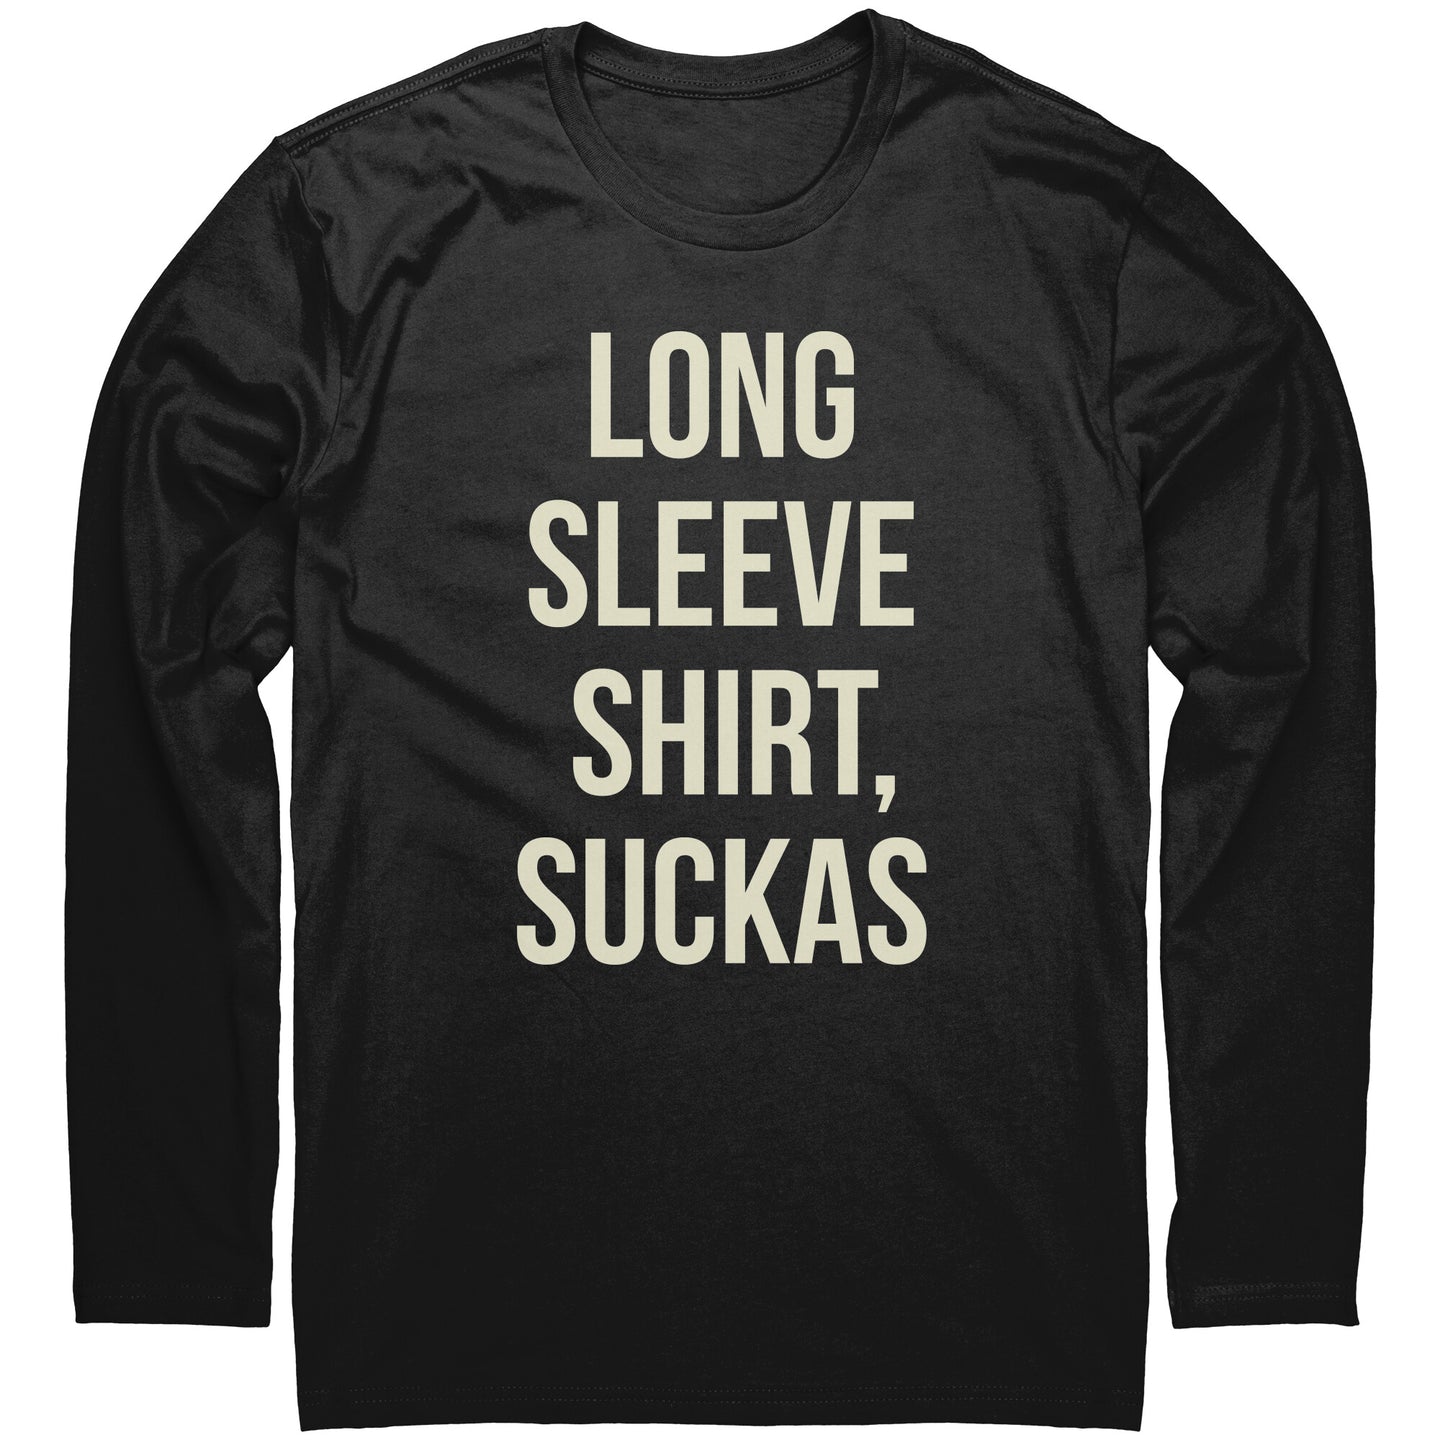 LONG SLEEVE SHIRT! t-shirt